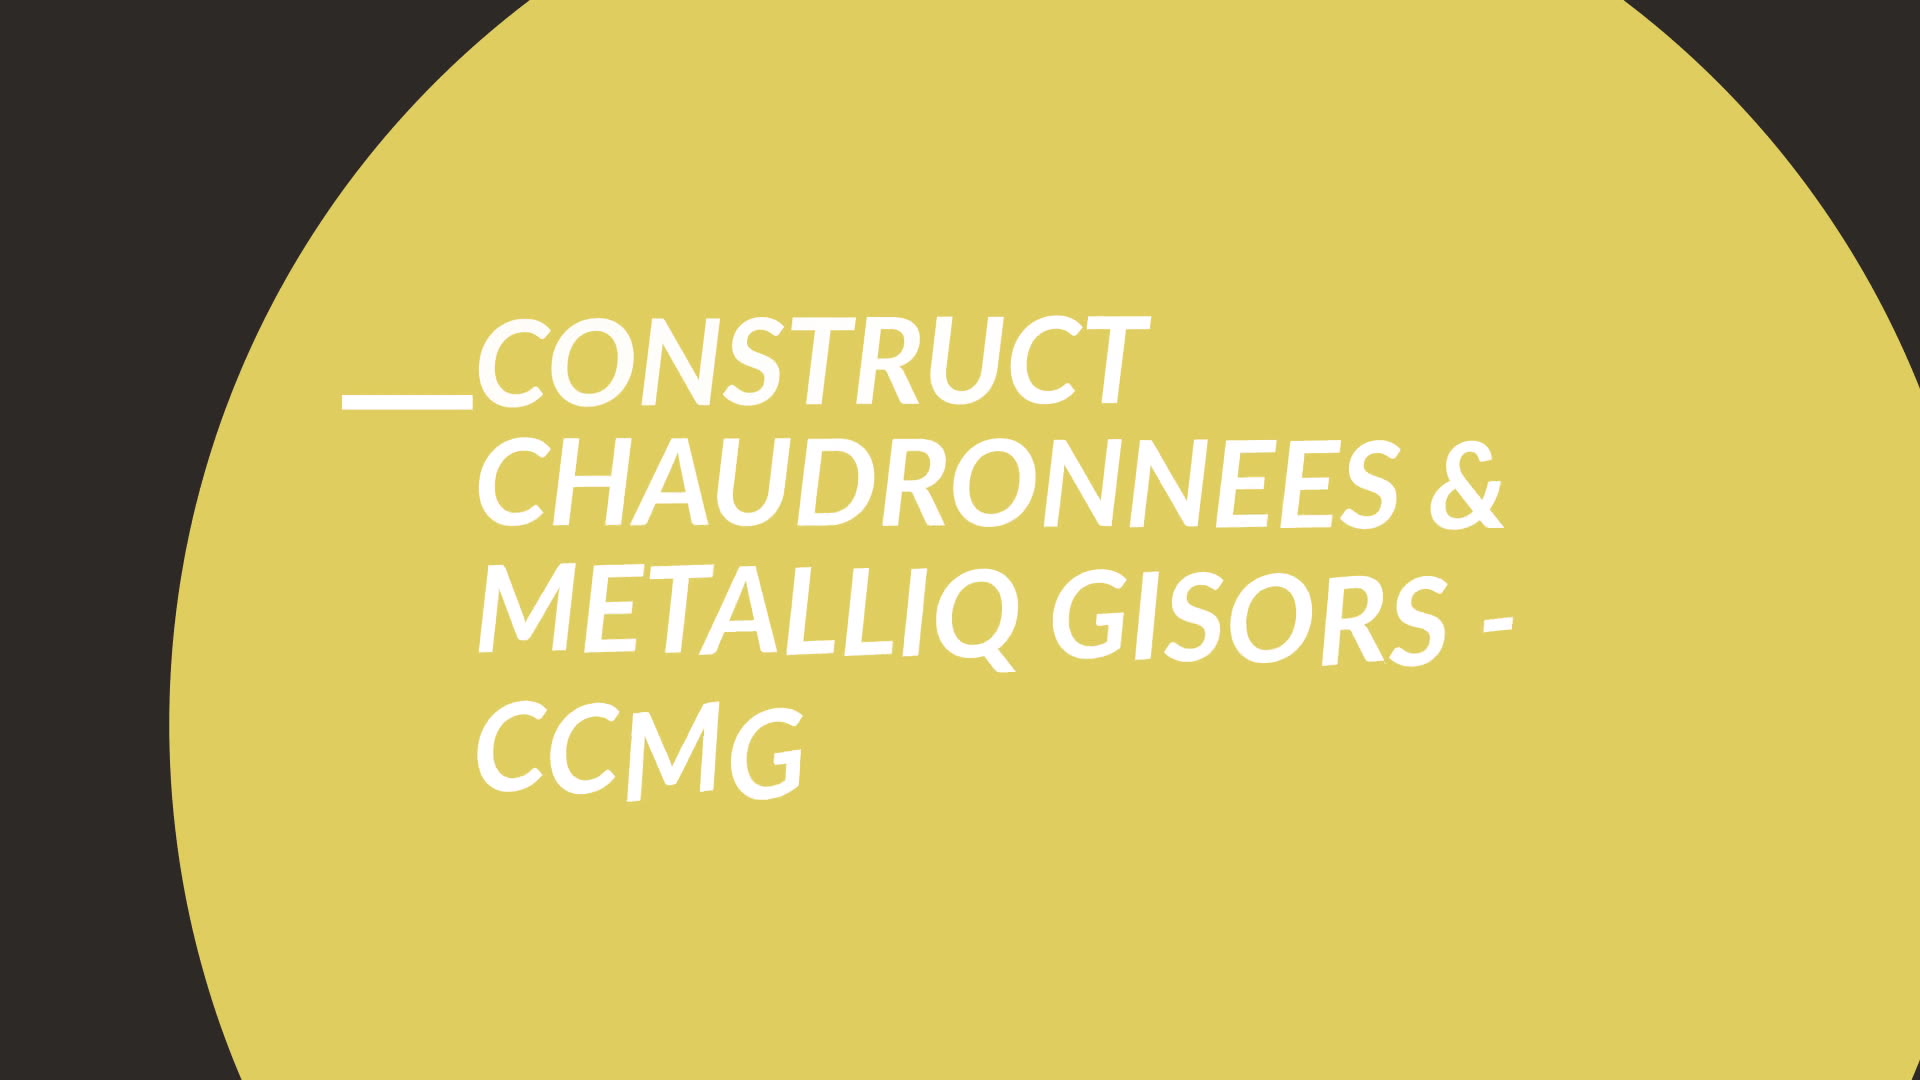 CCMG - Constructions Chaudronnées Métalliques de Gisors